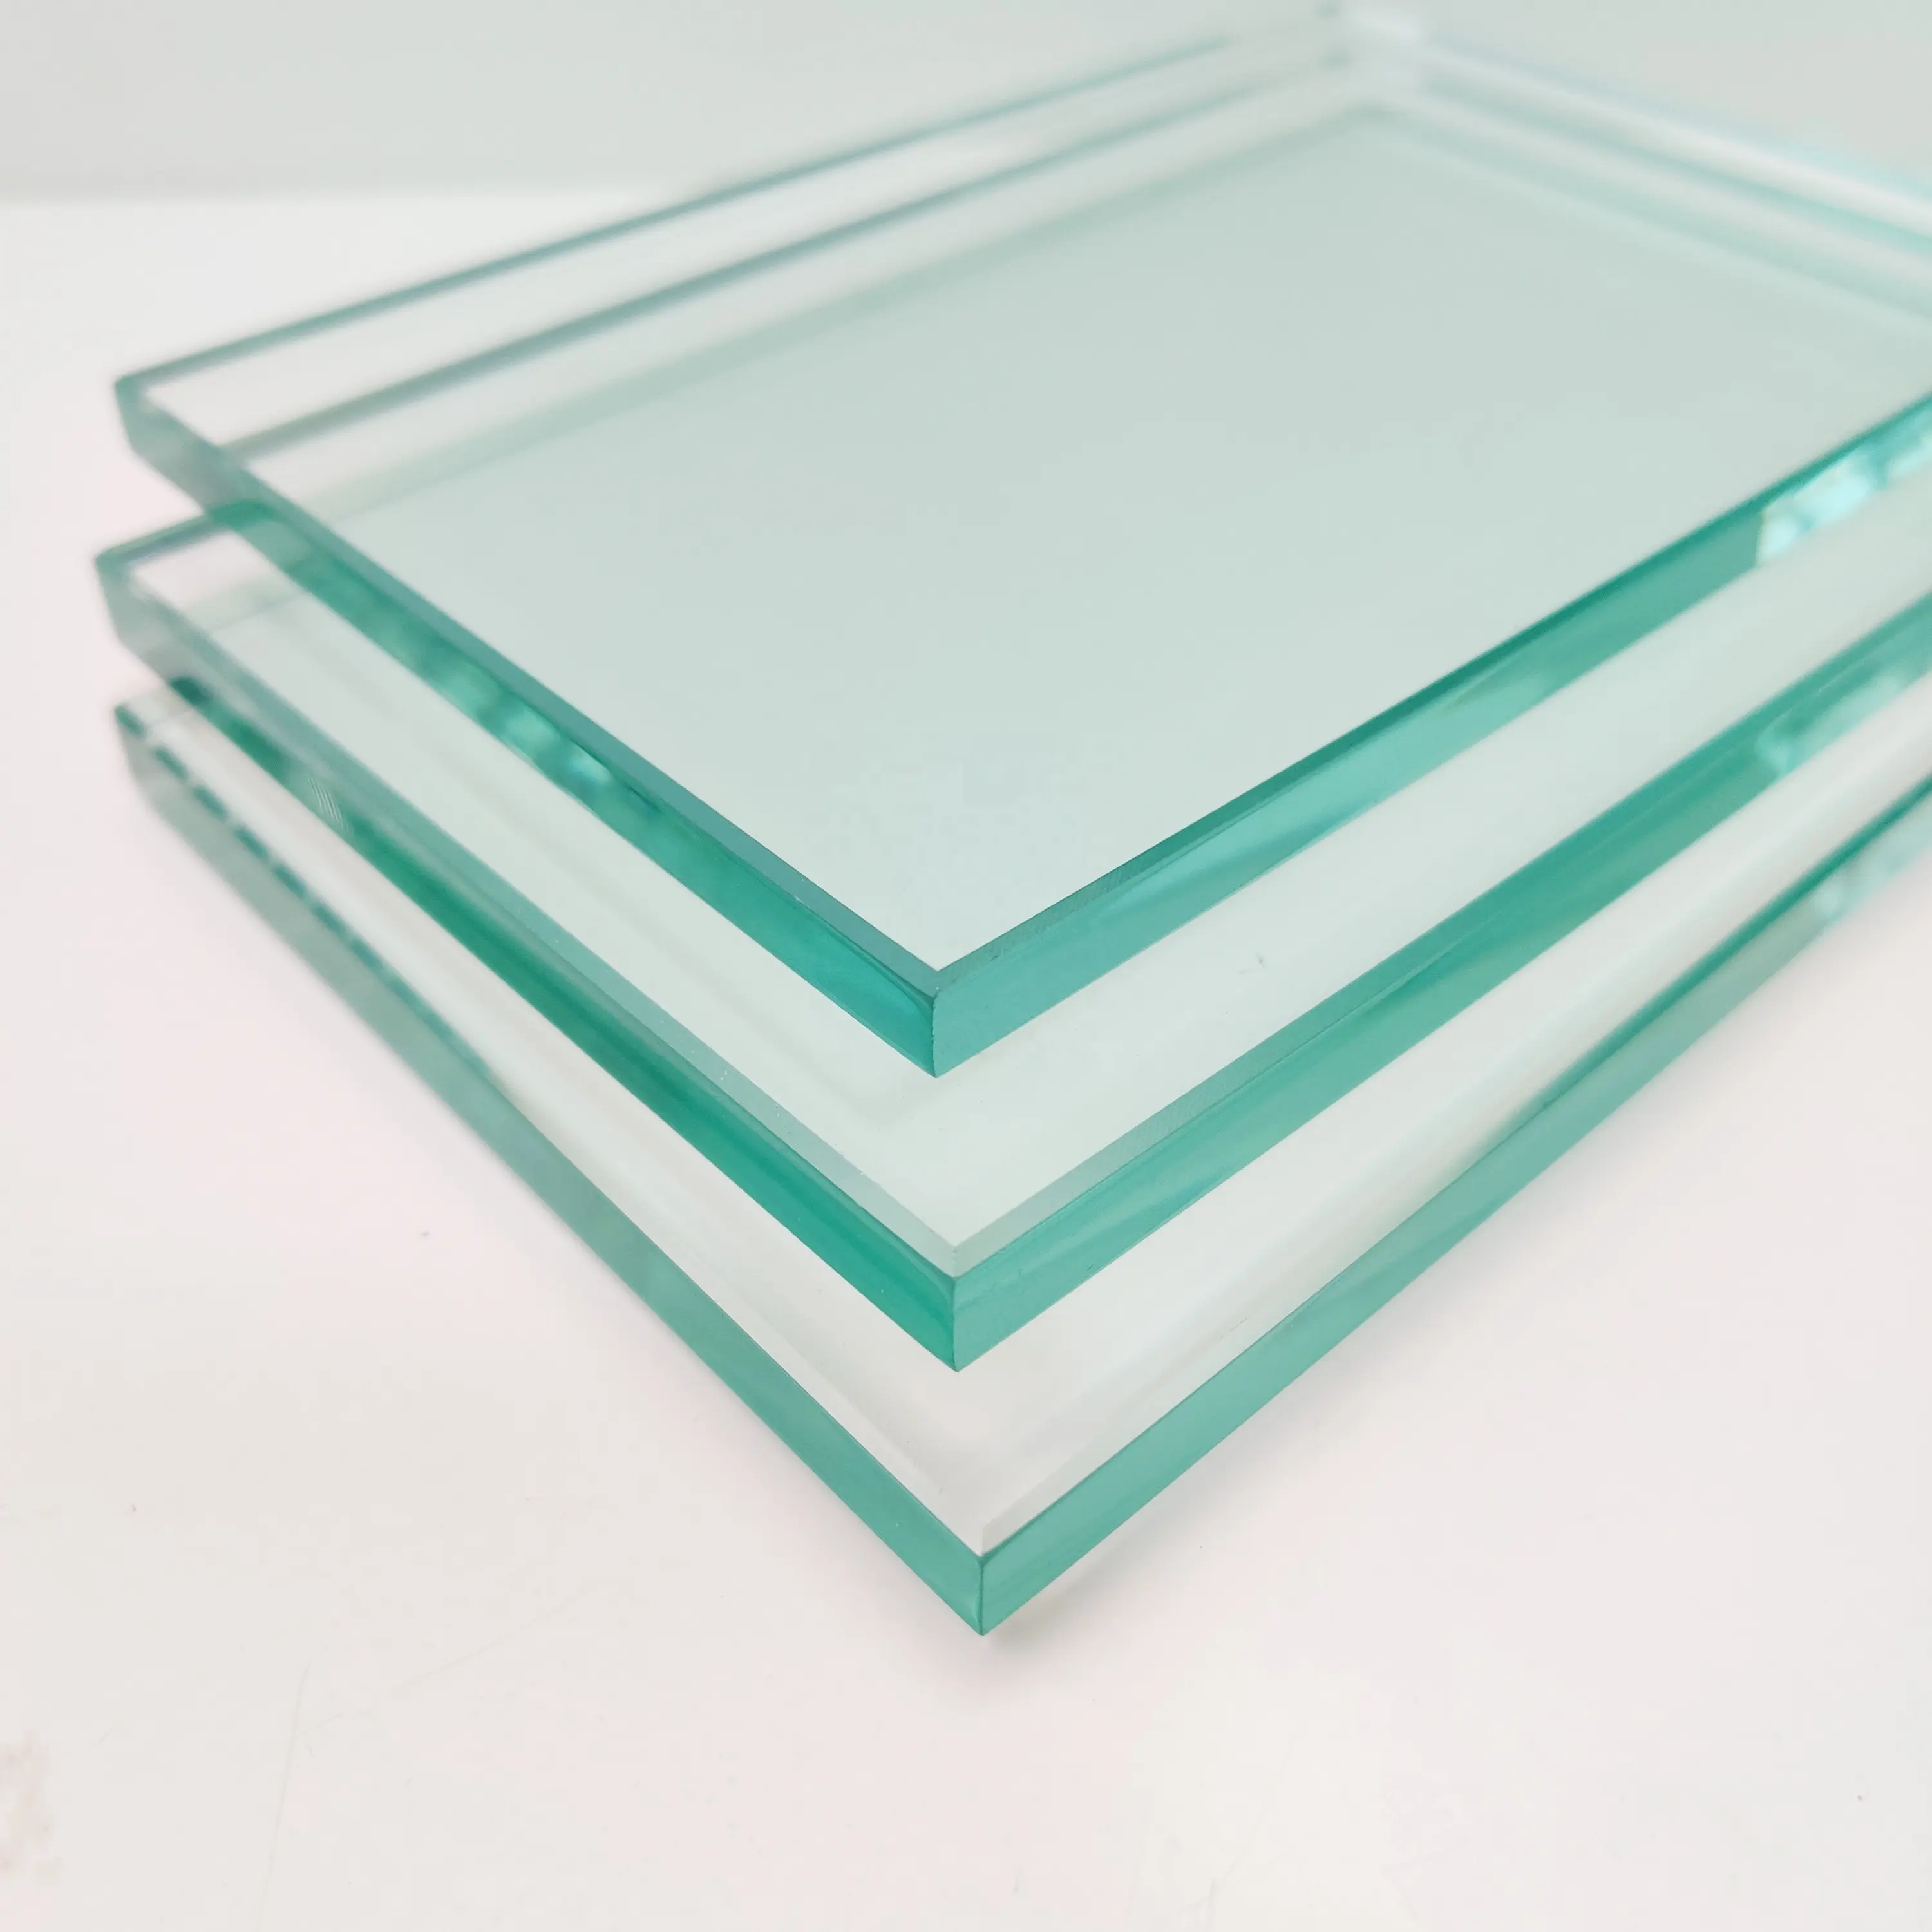 Venta caliente Vidrio flotado de vidrio transparente en varios espesores 2mm 3mm 4mm 5mm 6mm